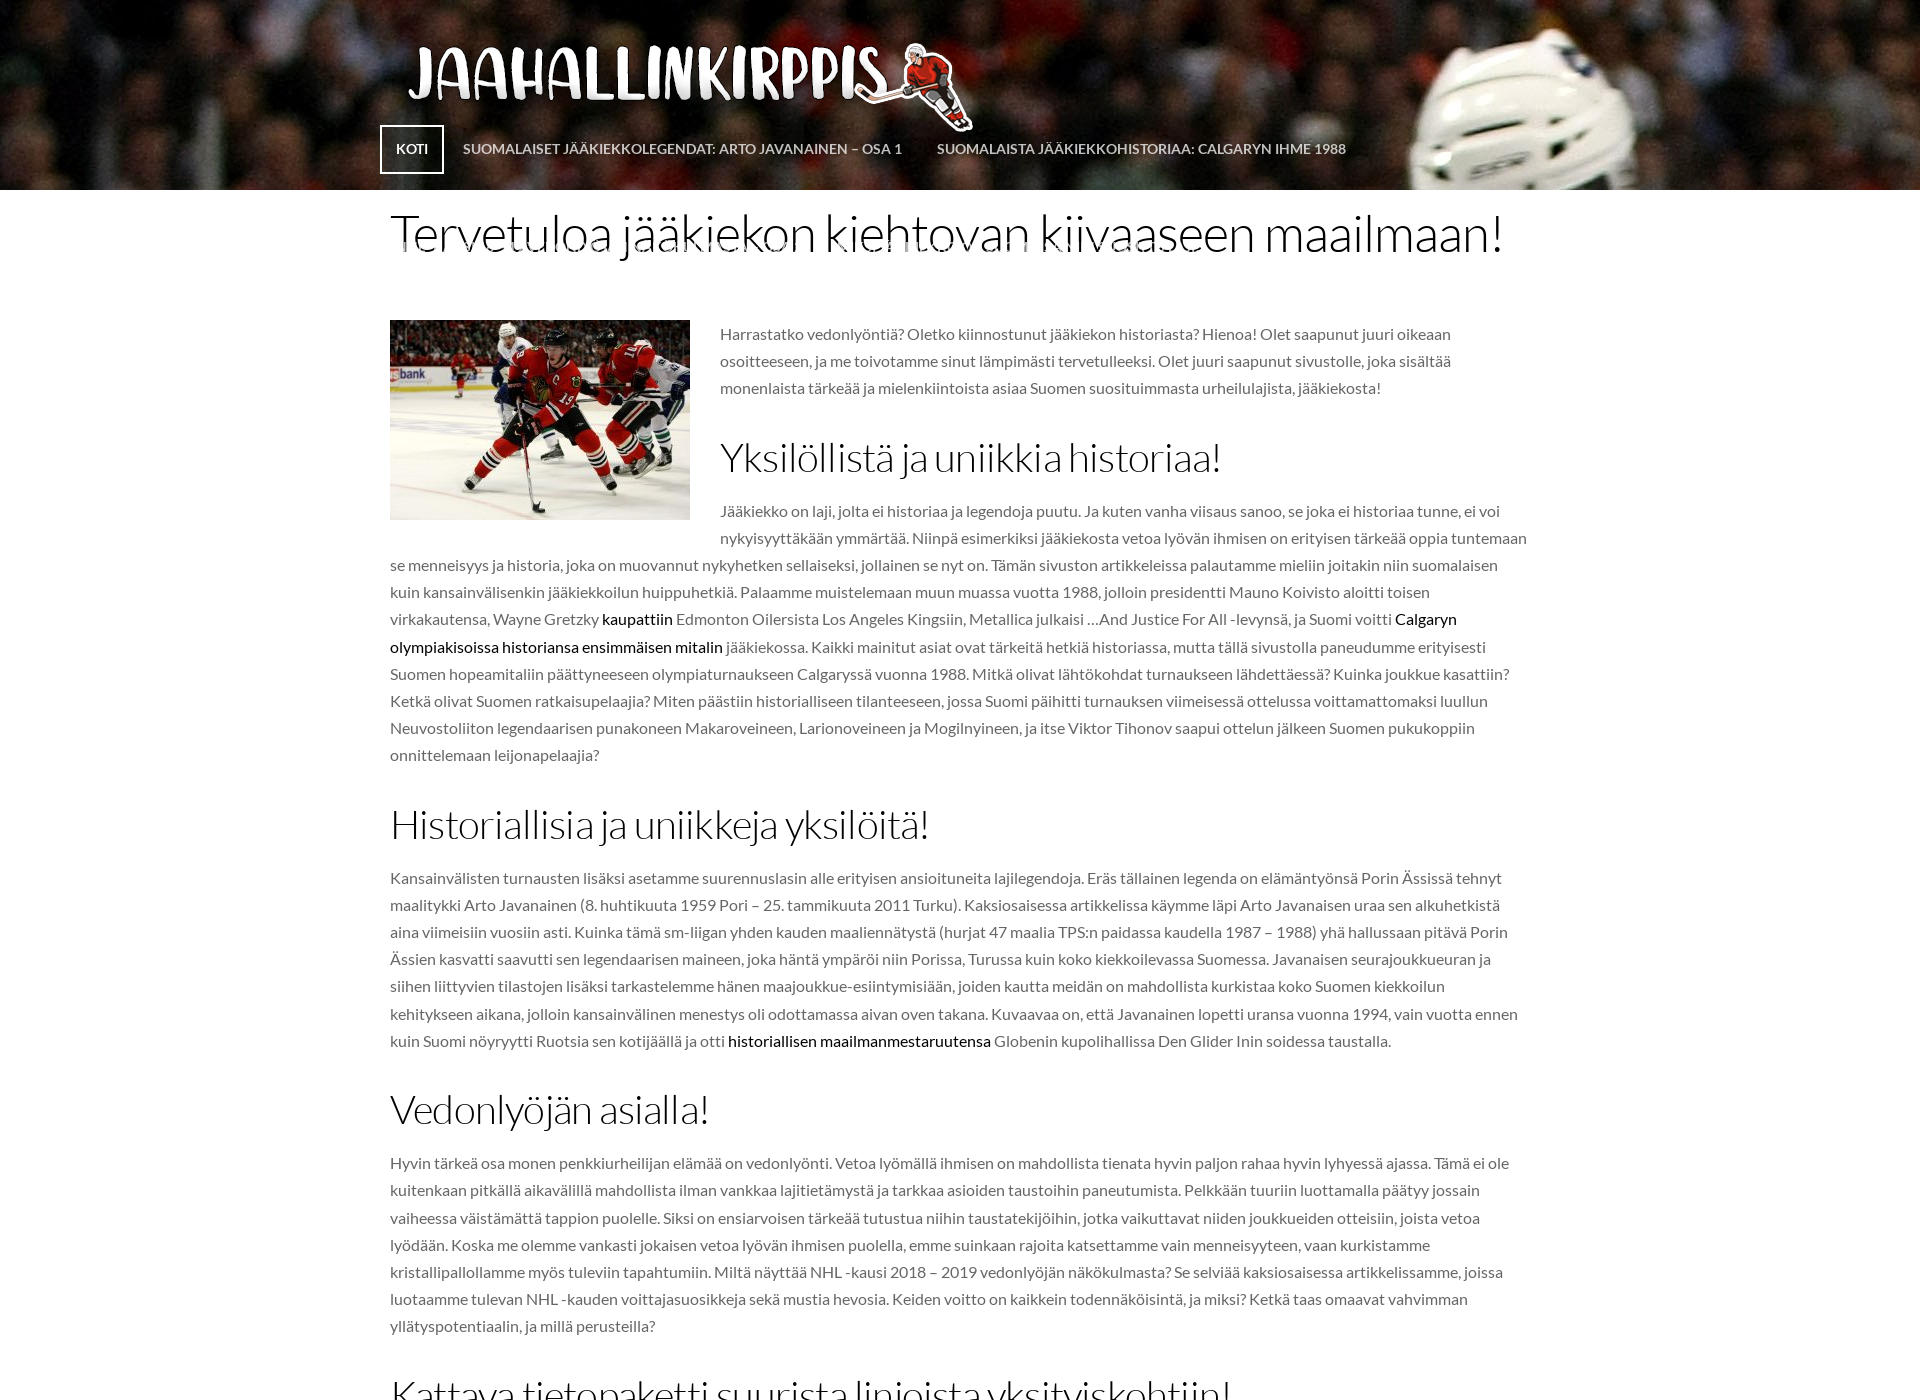 Näyttökuva jaahallinkirppis.fi